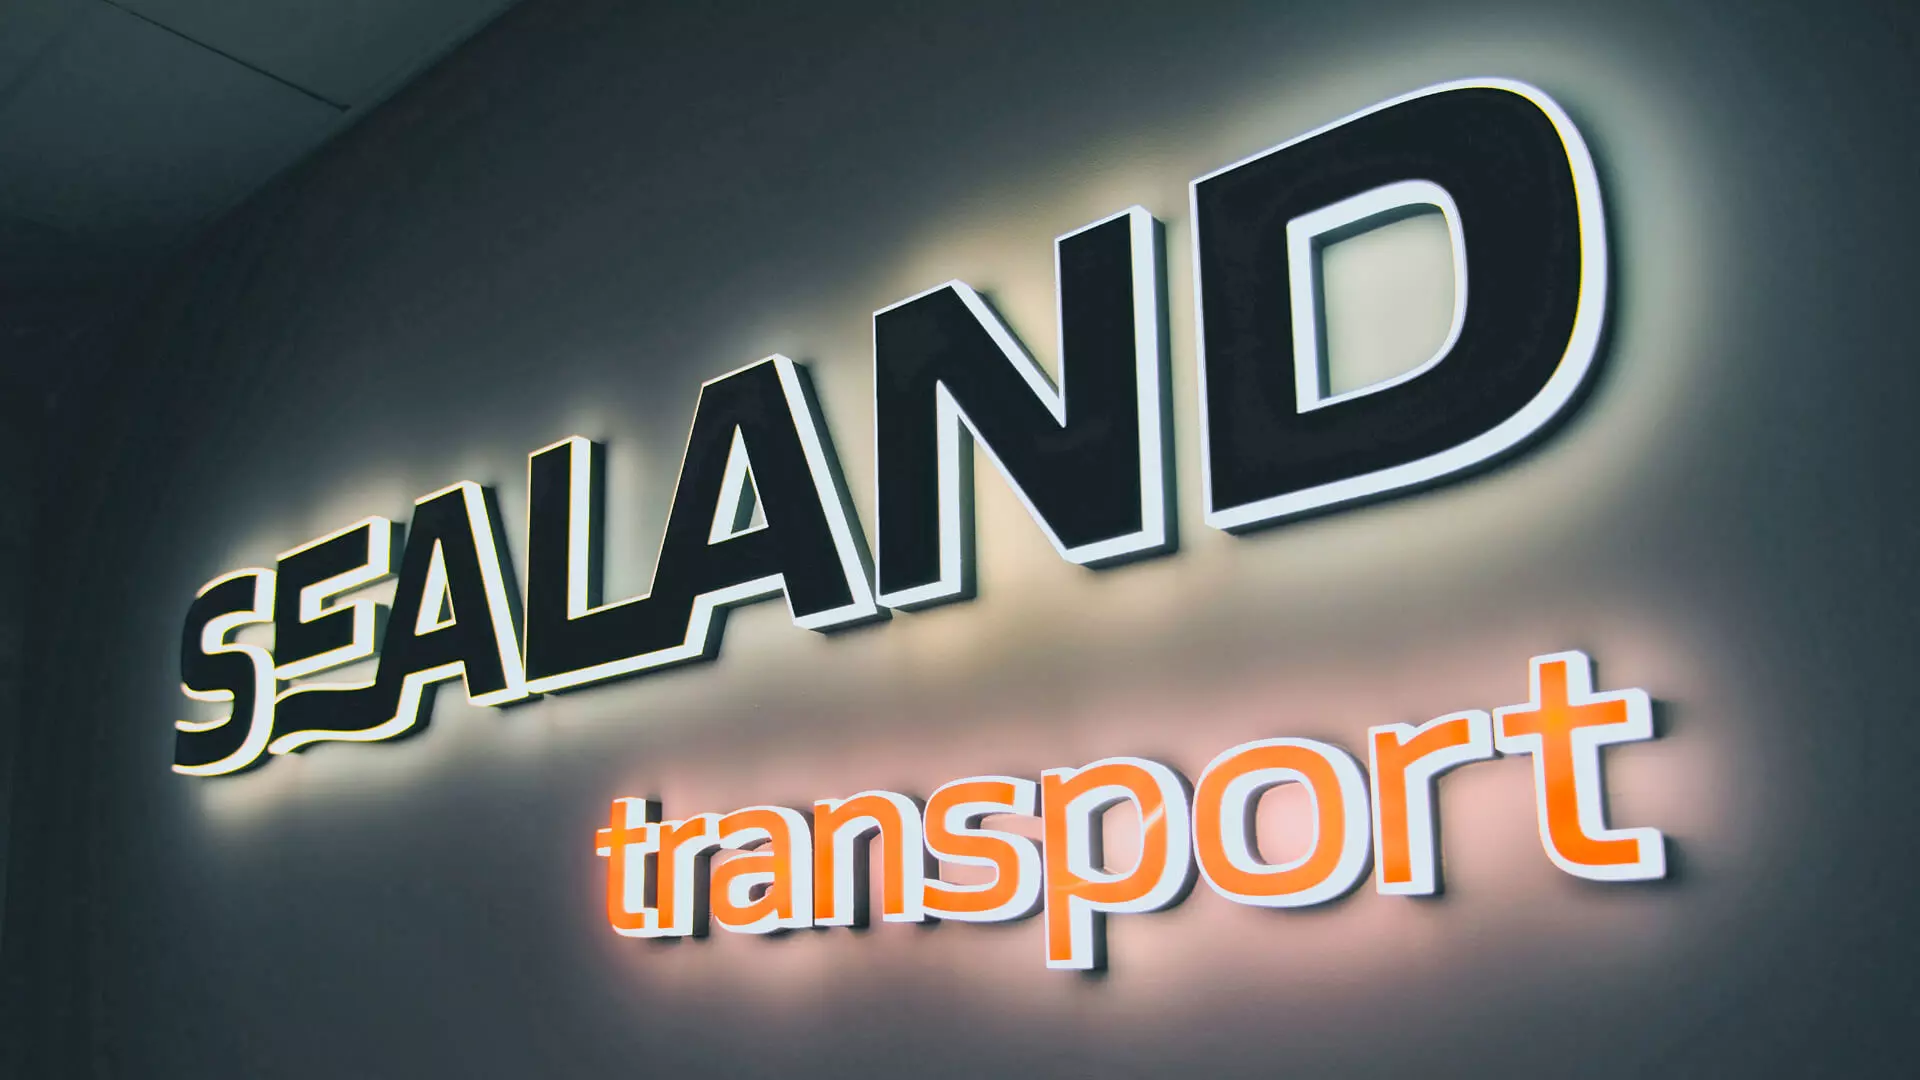 Sealand transport - brieven aan de zijkant in het kantoor